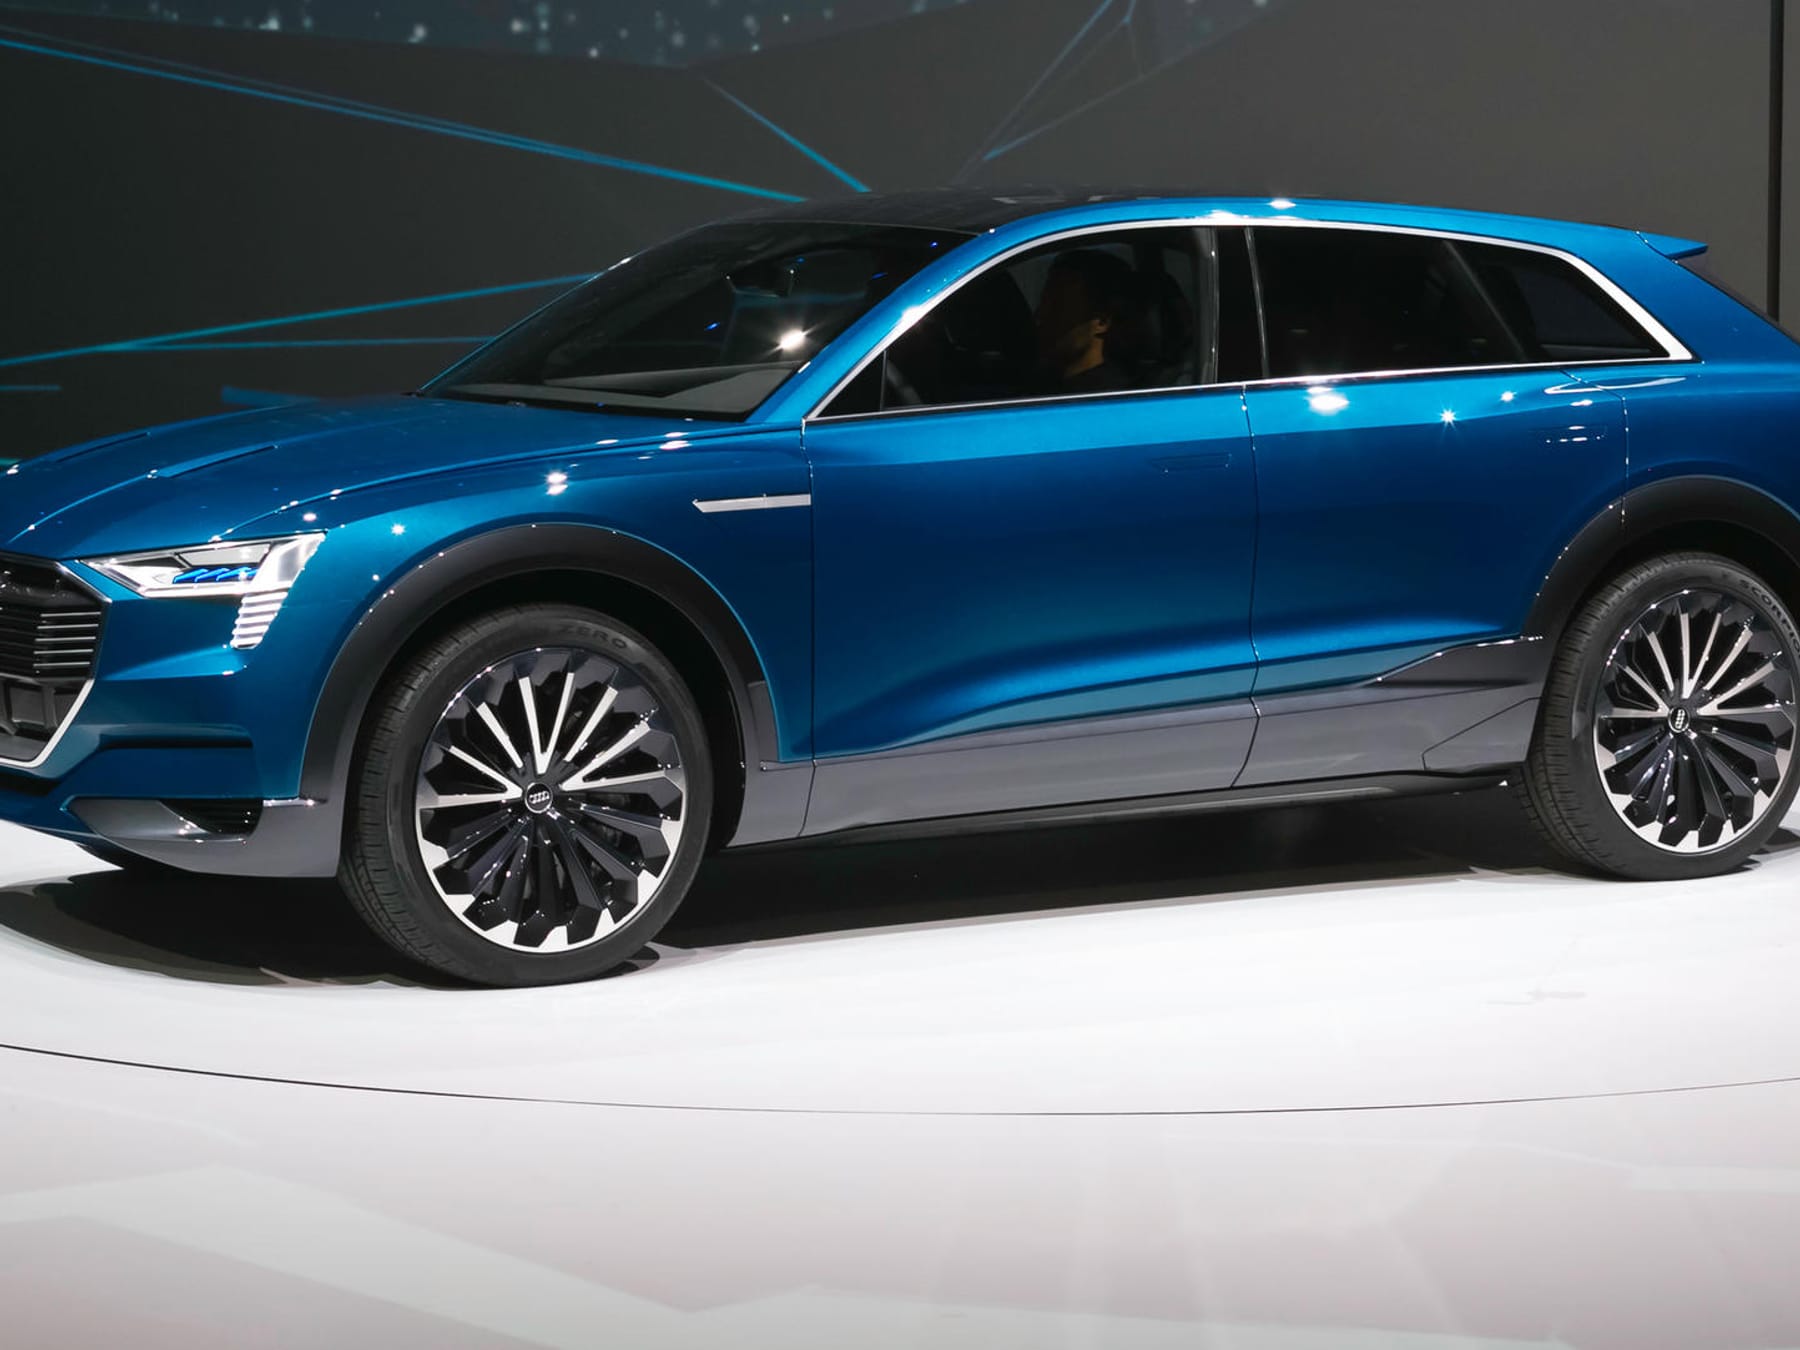 Audi Q5 (2024): So könnte die nächste Generation aussehen